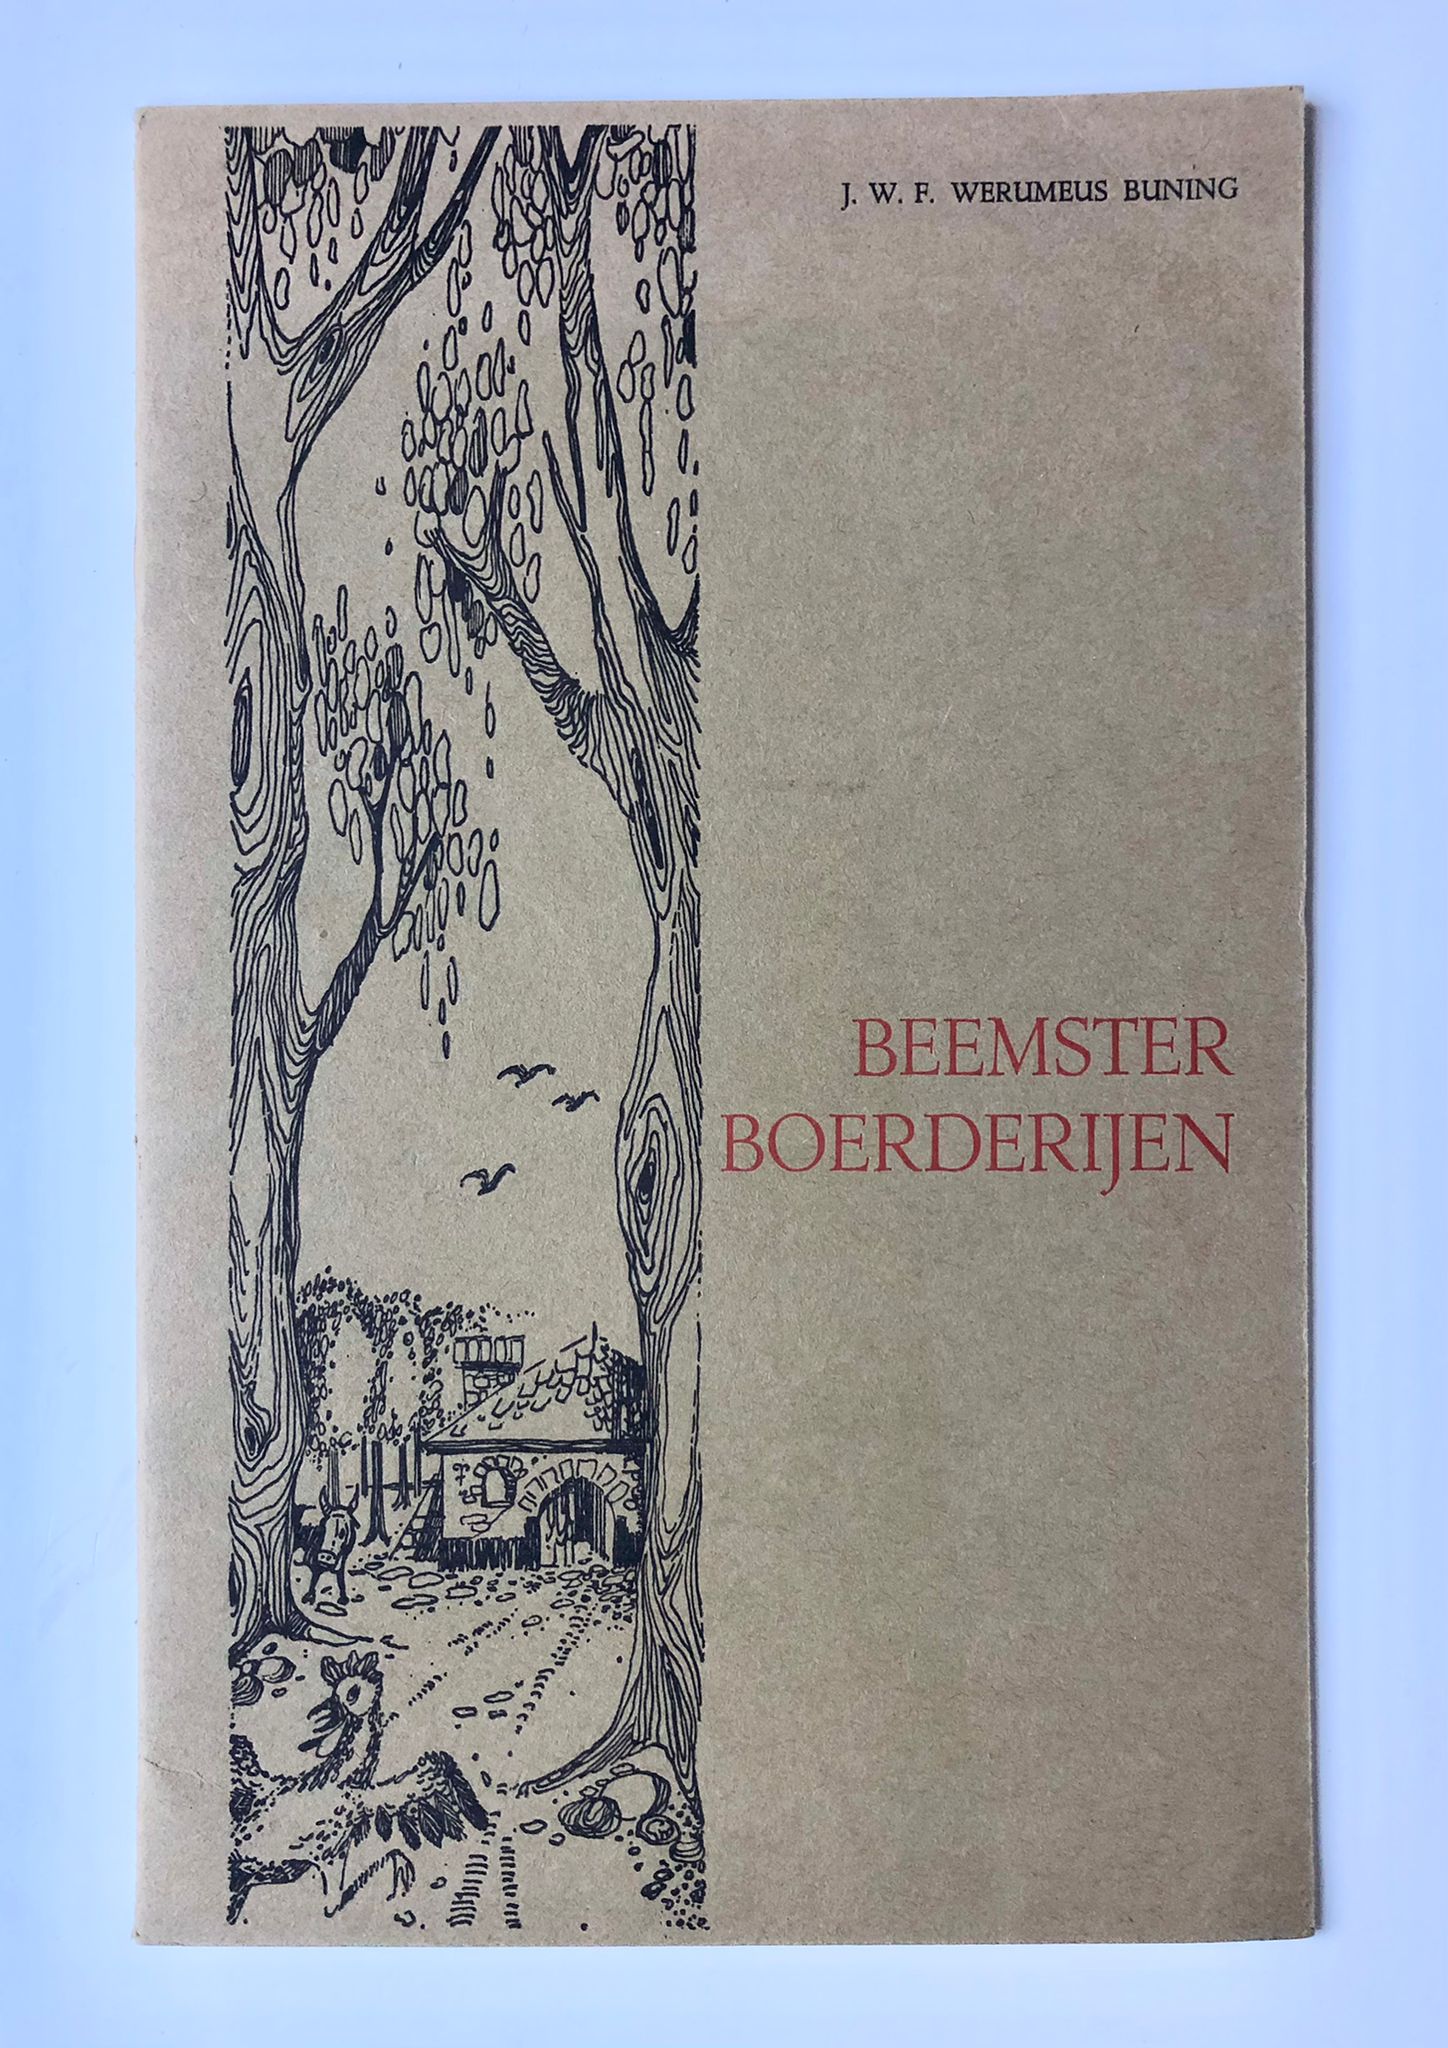 [Limited edition, farmhouses Beemster, 1962] Beemster Boerderijen, J. W. F. Werumeus Buning, Stadsacademie, Maastricht 1962, Gedrukt bij de C. V. Drukkerij v.h. Cl. Goffin (1 of 100 copies), 8 pp.